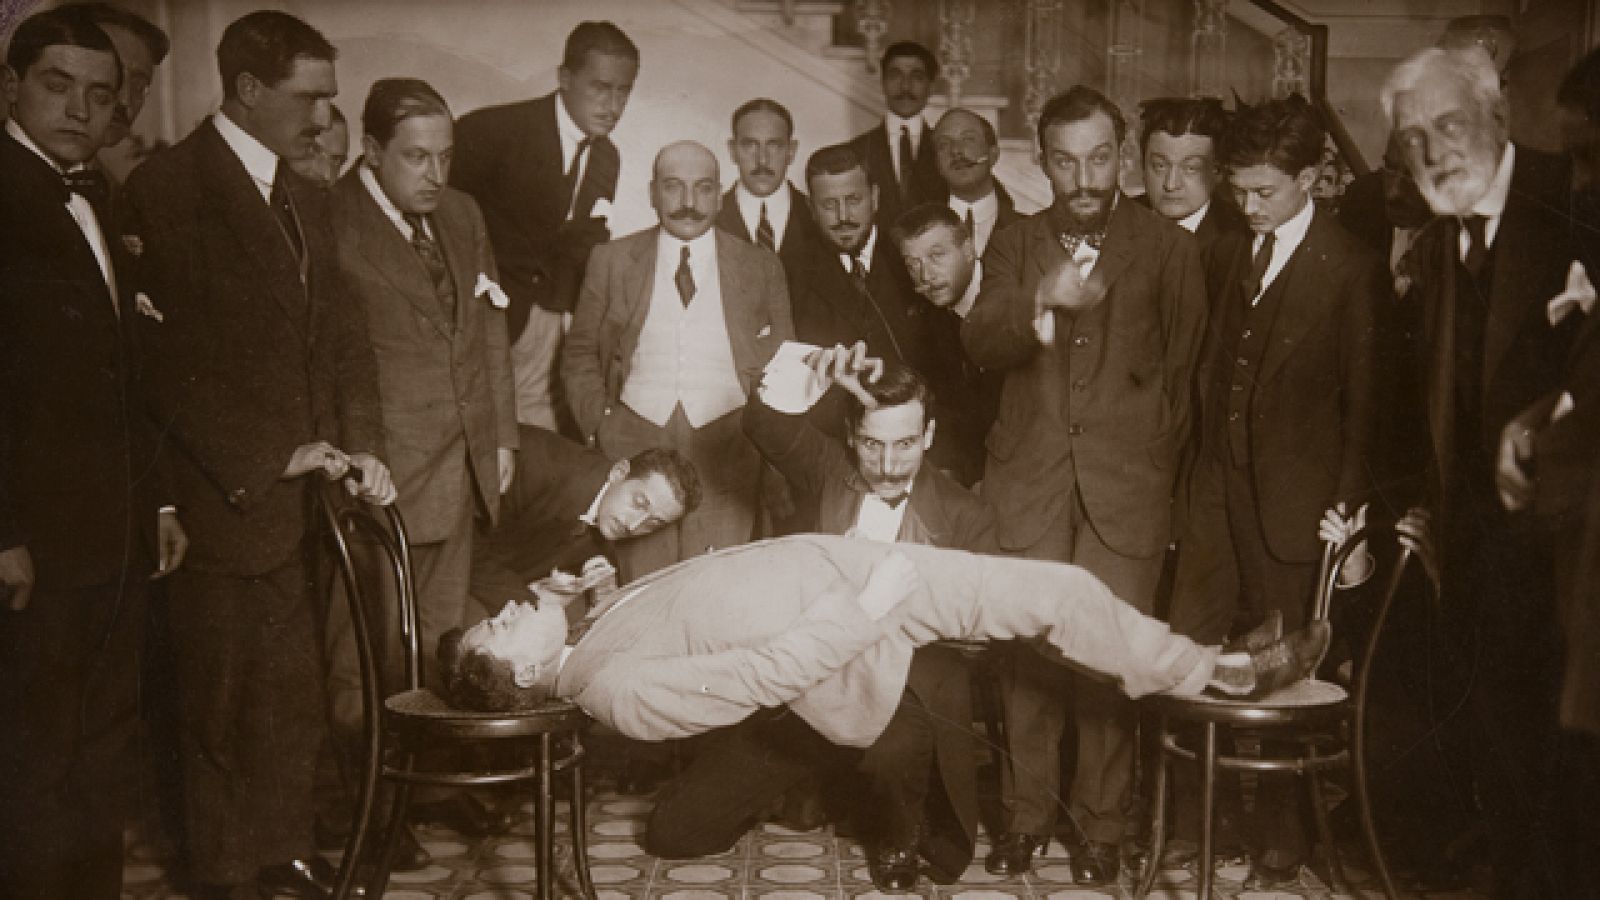 BENVENUTI, F.HipnotizadorFotografía, 1910